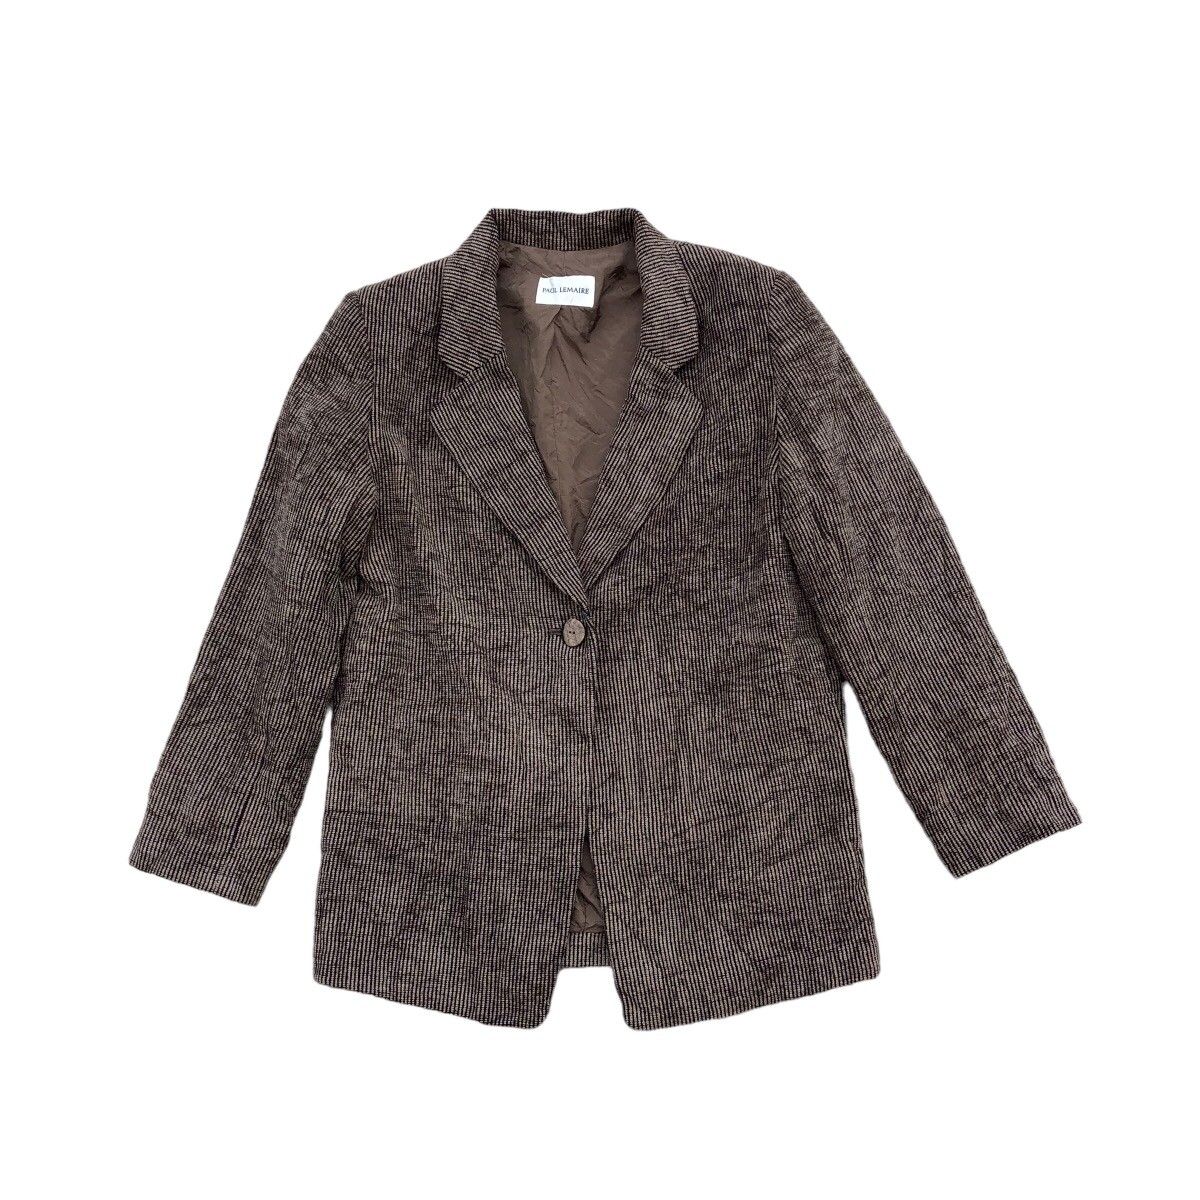 Archival Clothing PAUL LEMAIRE Corduroy Blazer Coat Size M / US 6-8 / IT 42-44 - 1 Preview